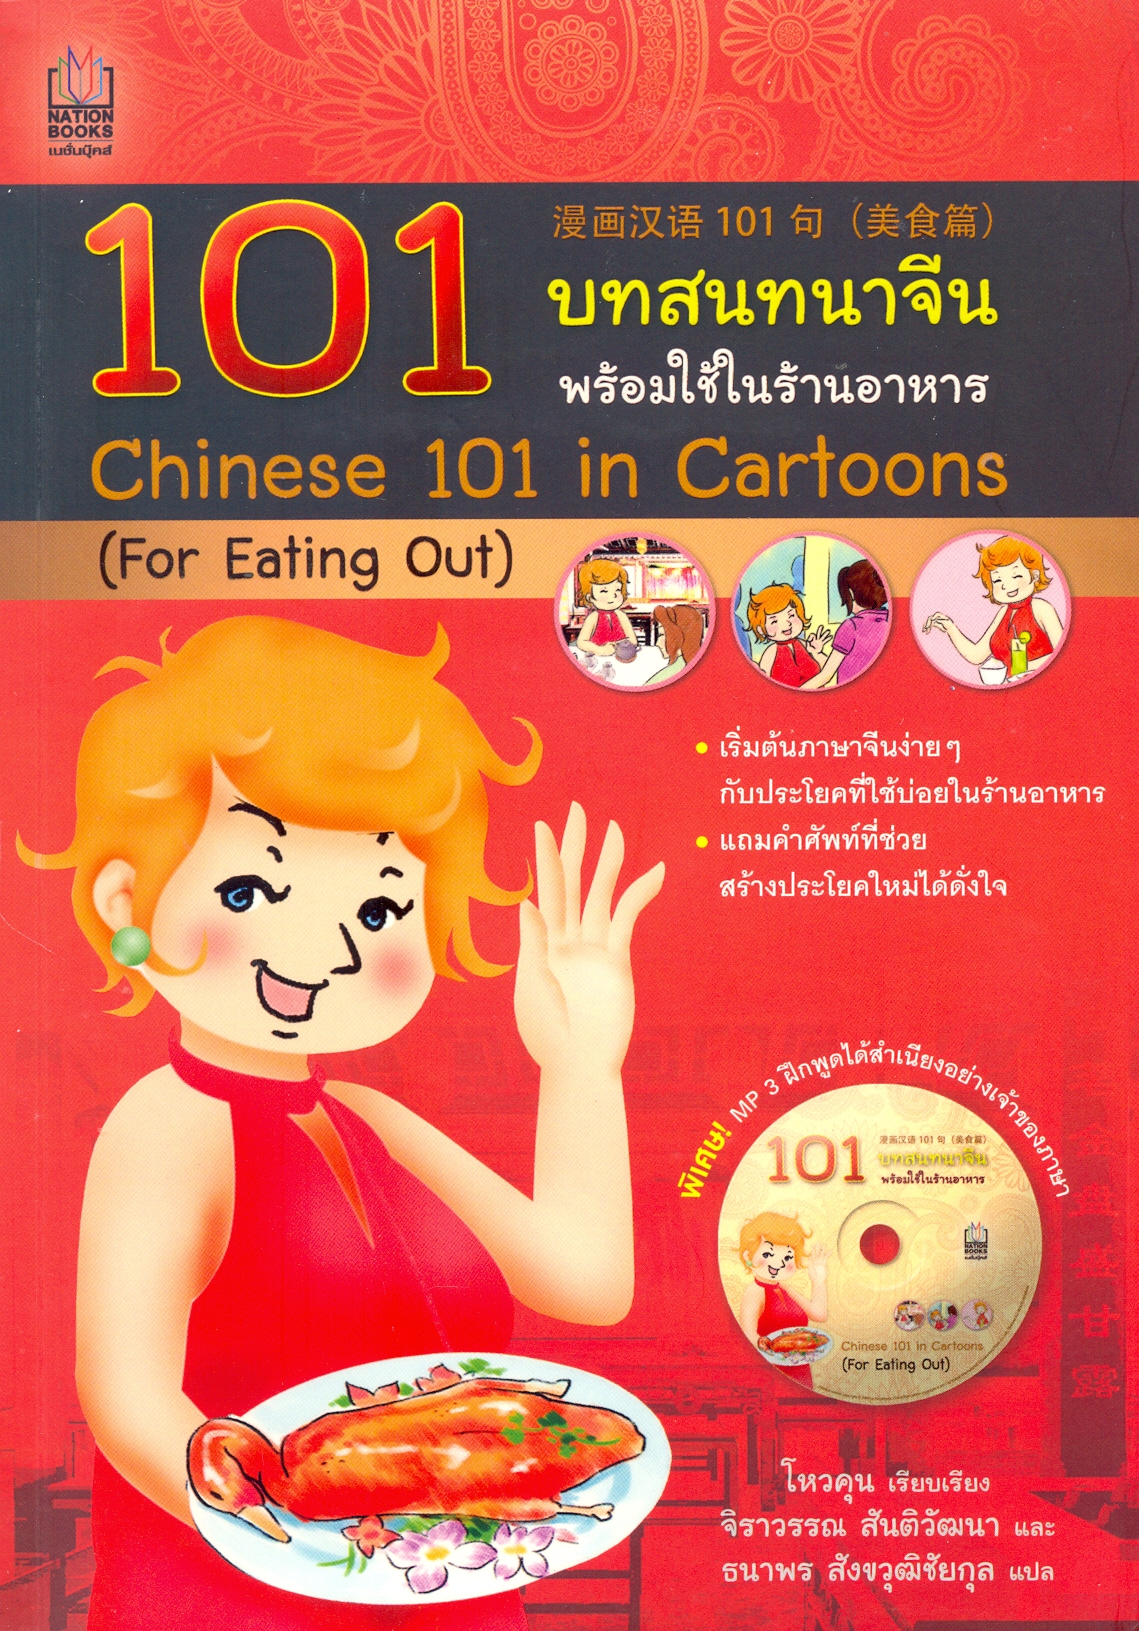 101 บทสนทนาจีน พร้อมใช้ในร้านอาหาร = Chinese 101 in Cartoons (for eating out)